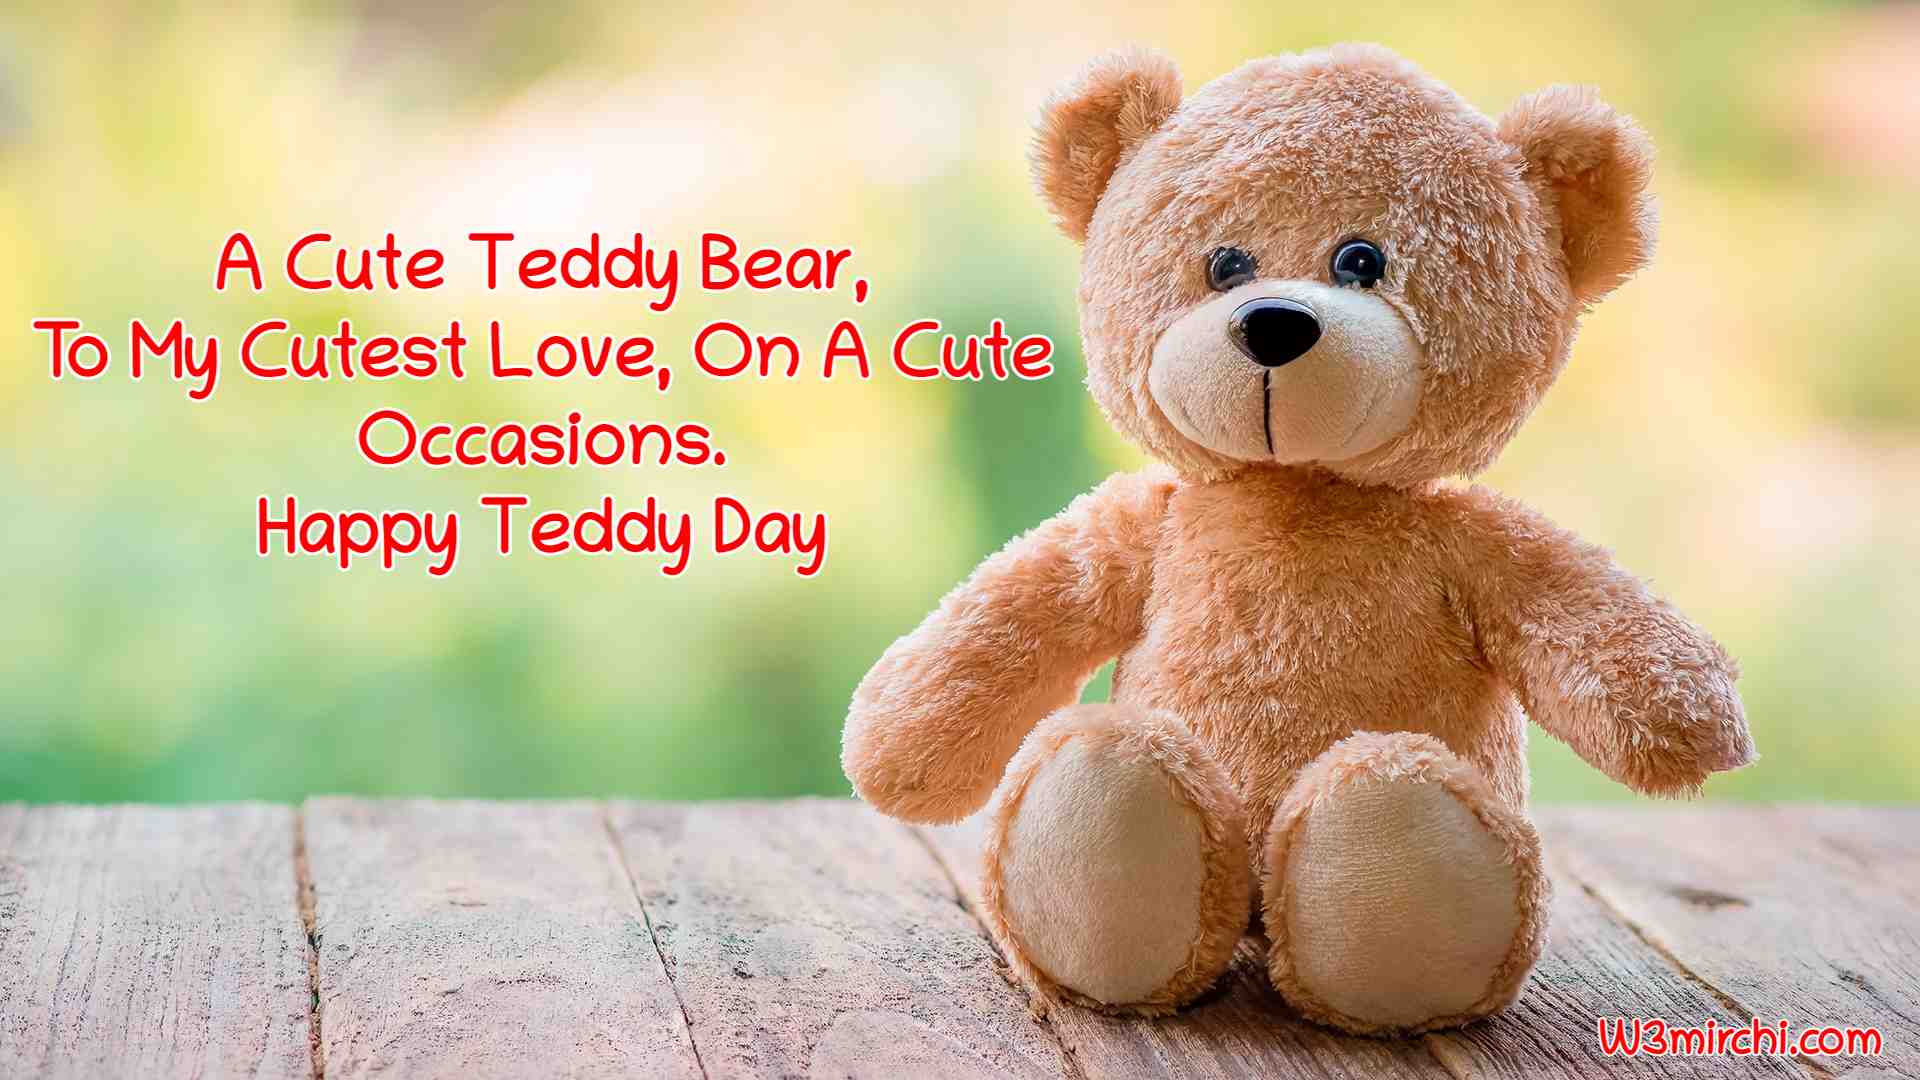 A Cute Teddy Bear,